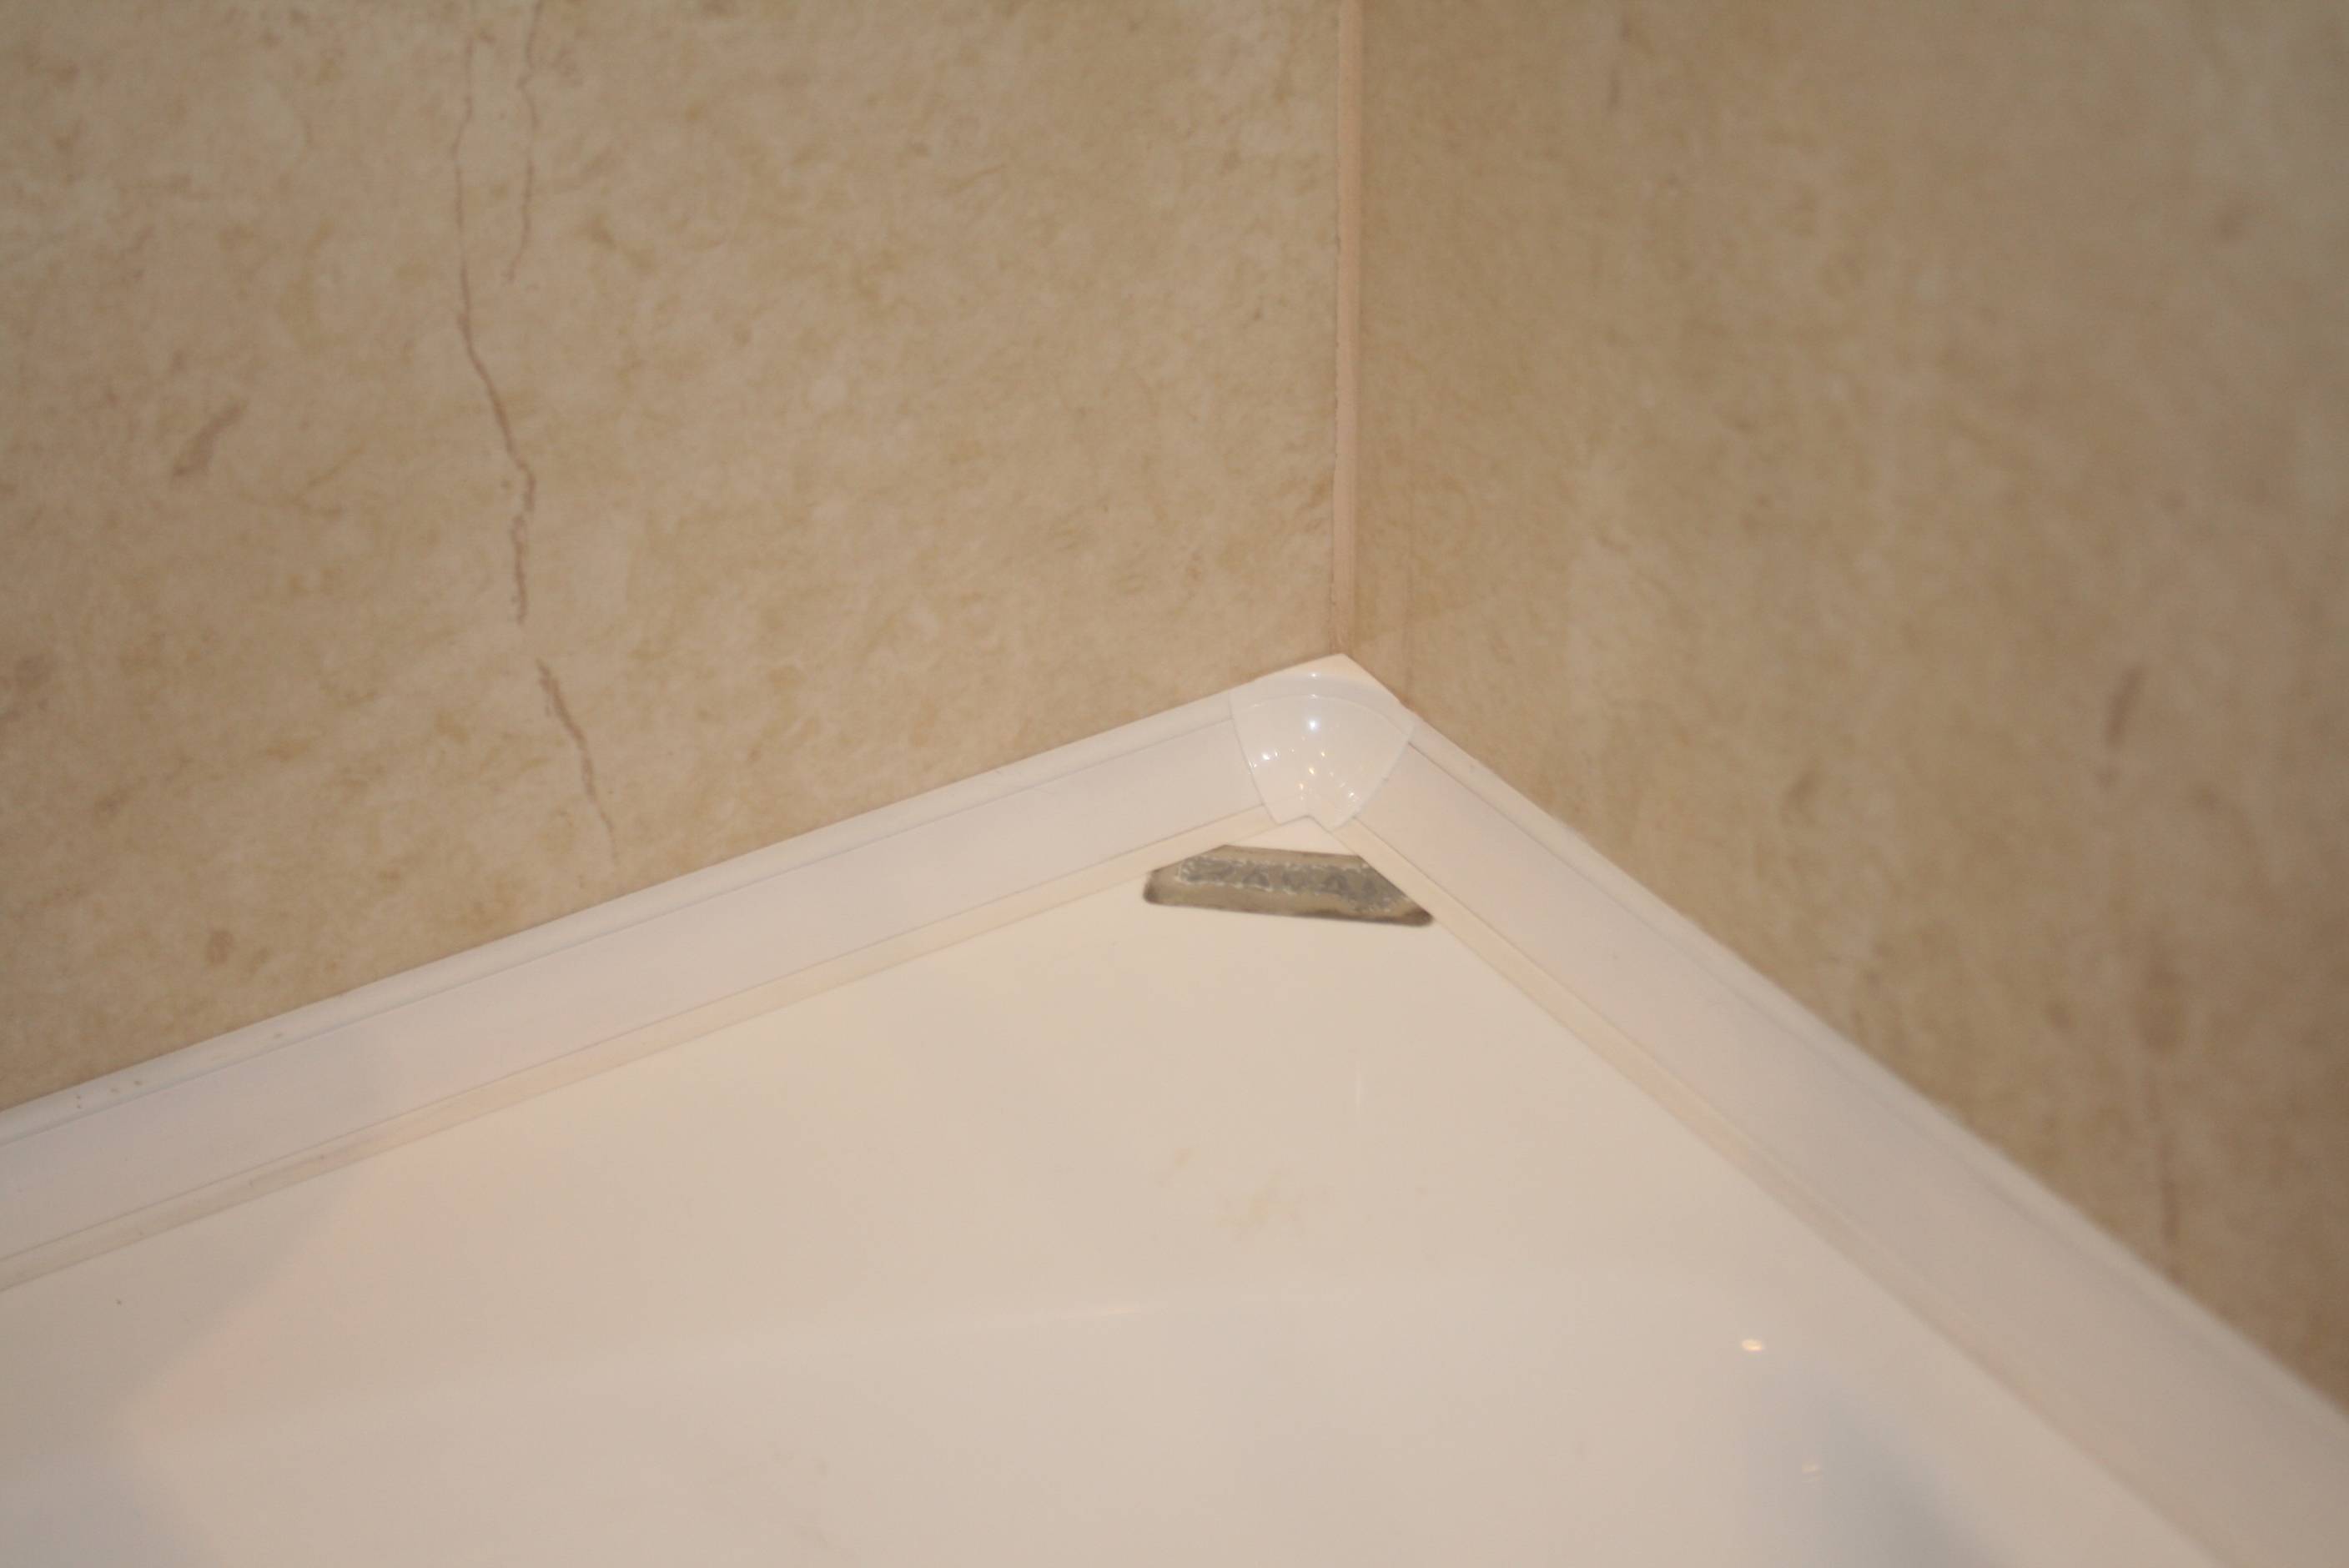 Купить плинтус в ванной в спб. Керамический плинтус для ванной. Плинтус между ванной и плиткой. Керамический уголок для ванной. Плинтус для ванной пластиковый.